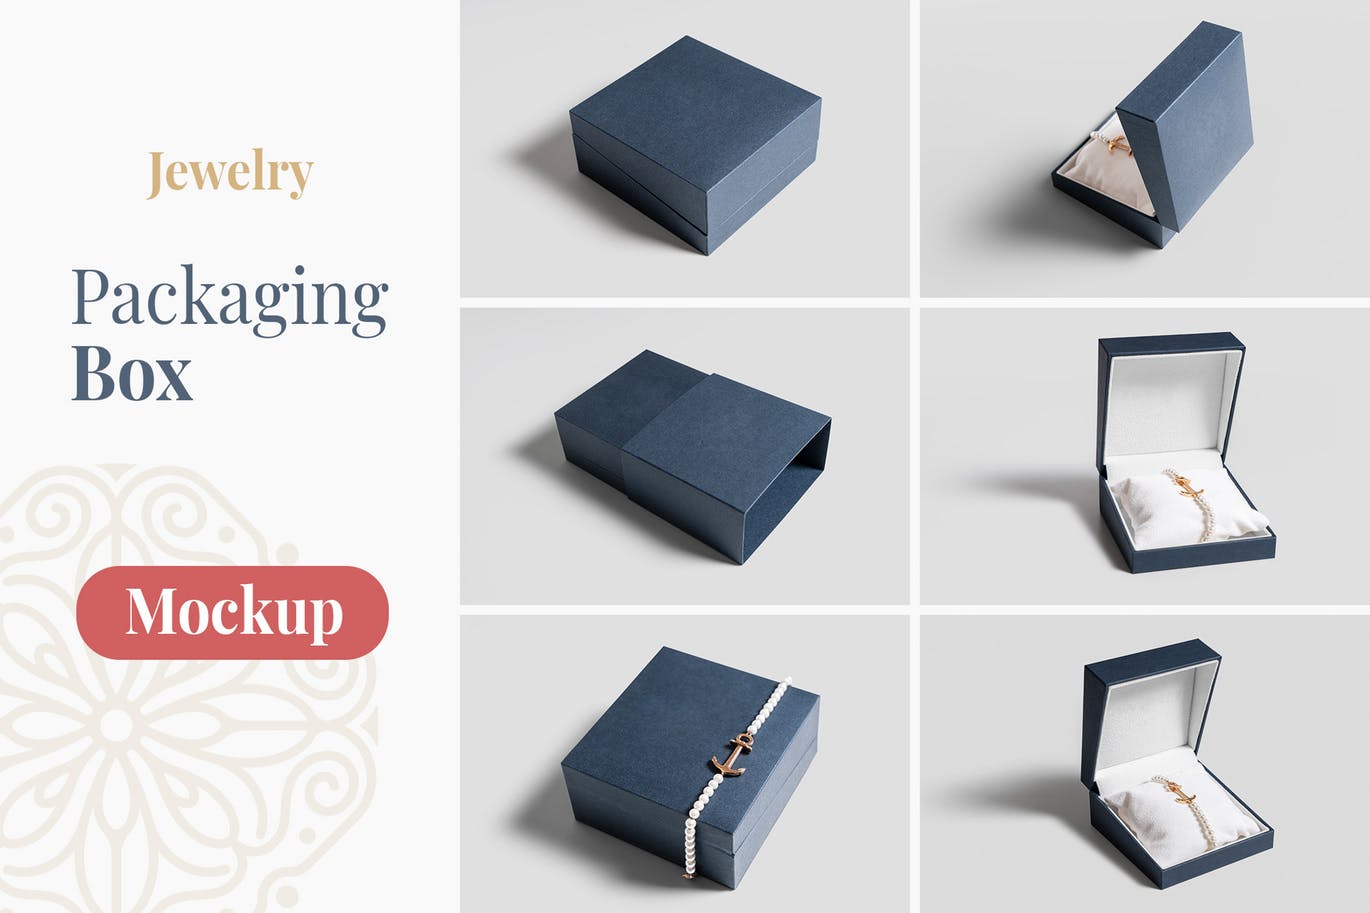 珠宝包装盒设计图素材库精选模板 Jewelry Packaging Box Mockups插图(1)